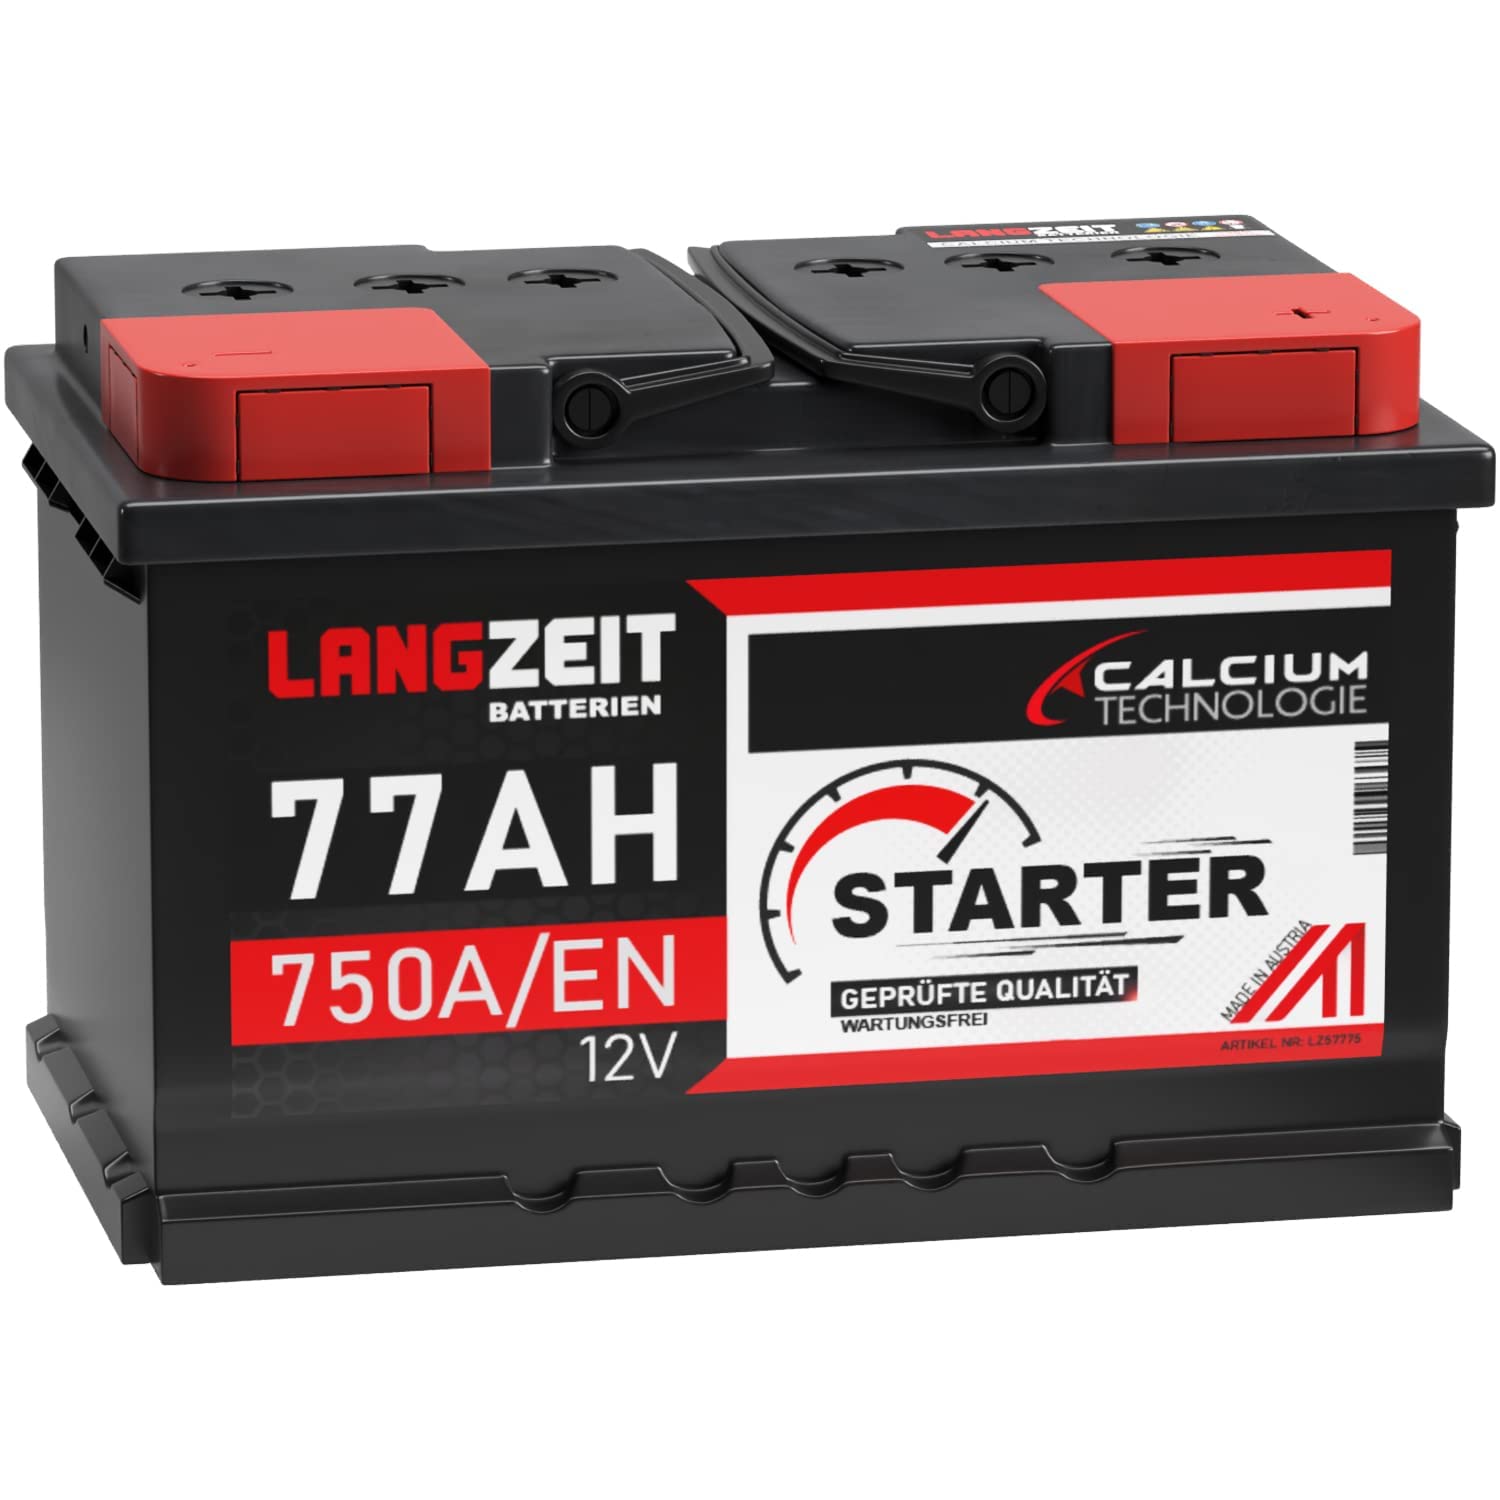 LANGZEIT Autobatterie 77AH 12V 750A/EN Starterbatterie +30% mehr Leistung ersetzt Batterie 75Ah 72Ah 74Ah 70Ah Starter Batterie von LANGZEIT Batterien